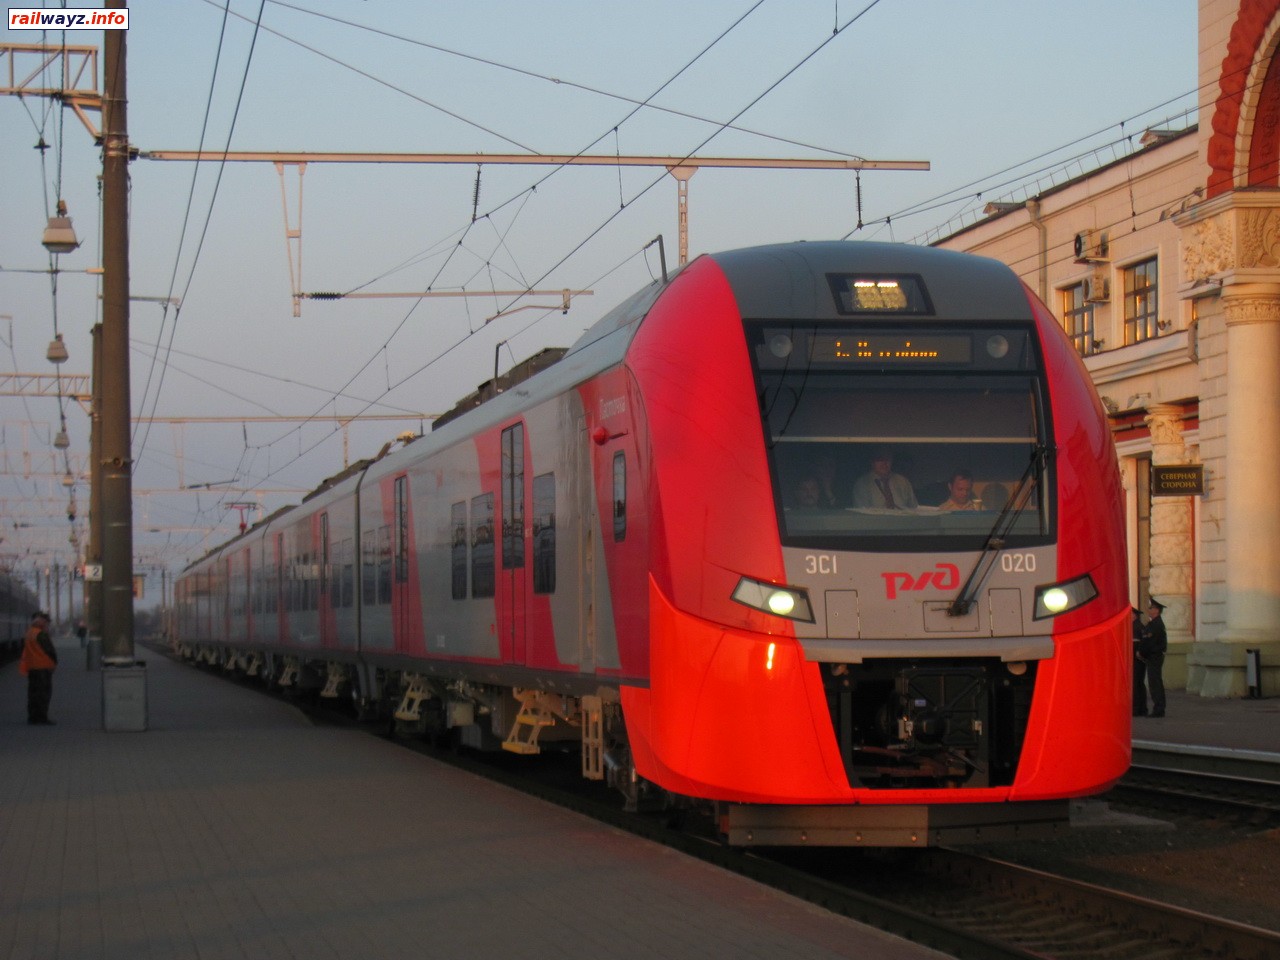 Электропоезд ЭС1-020 прибывает на станцию Орша-Центральная